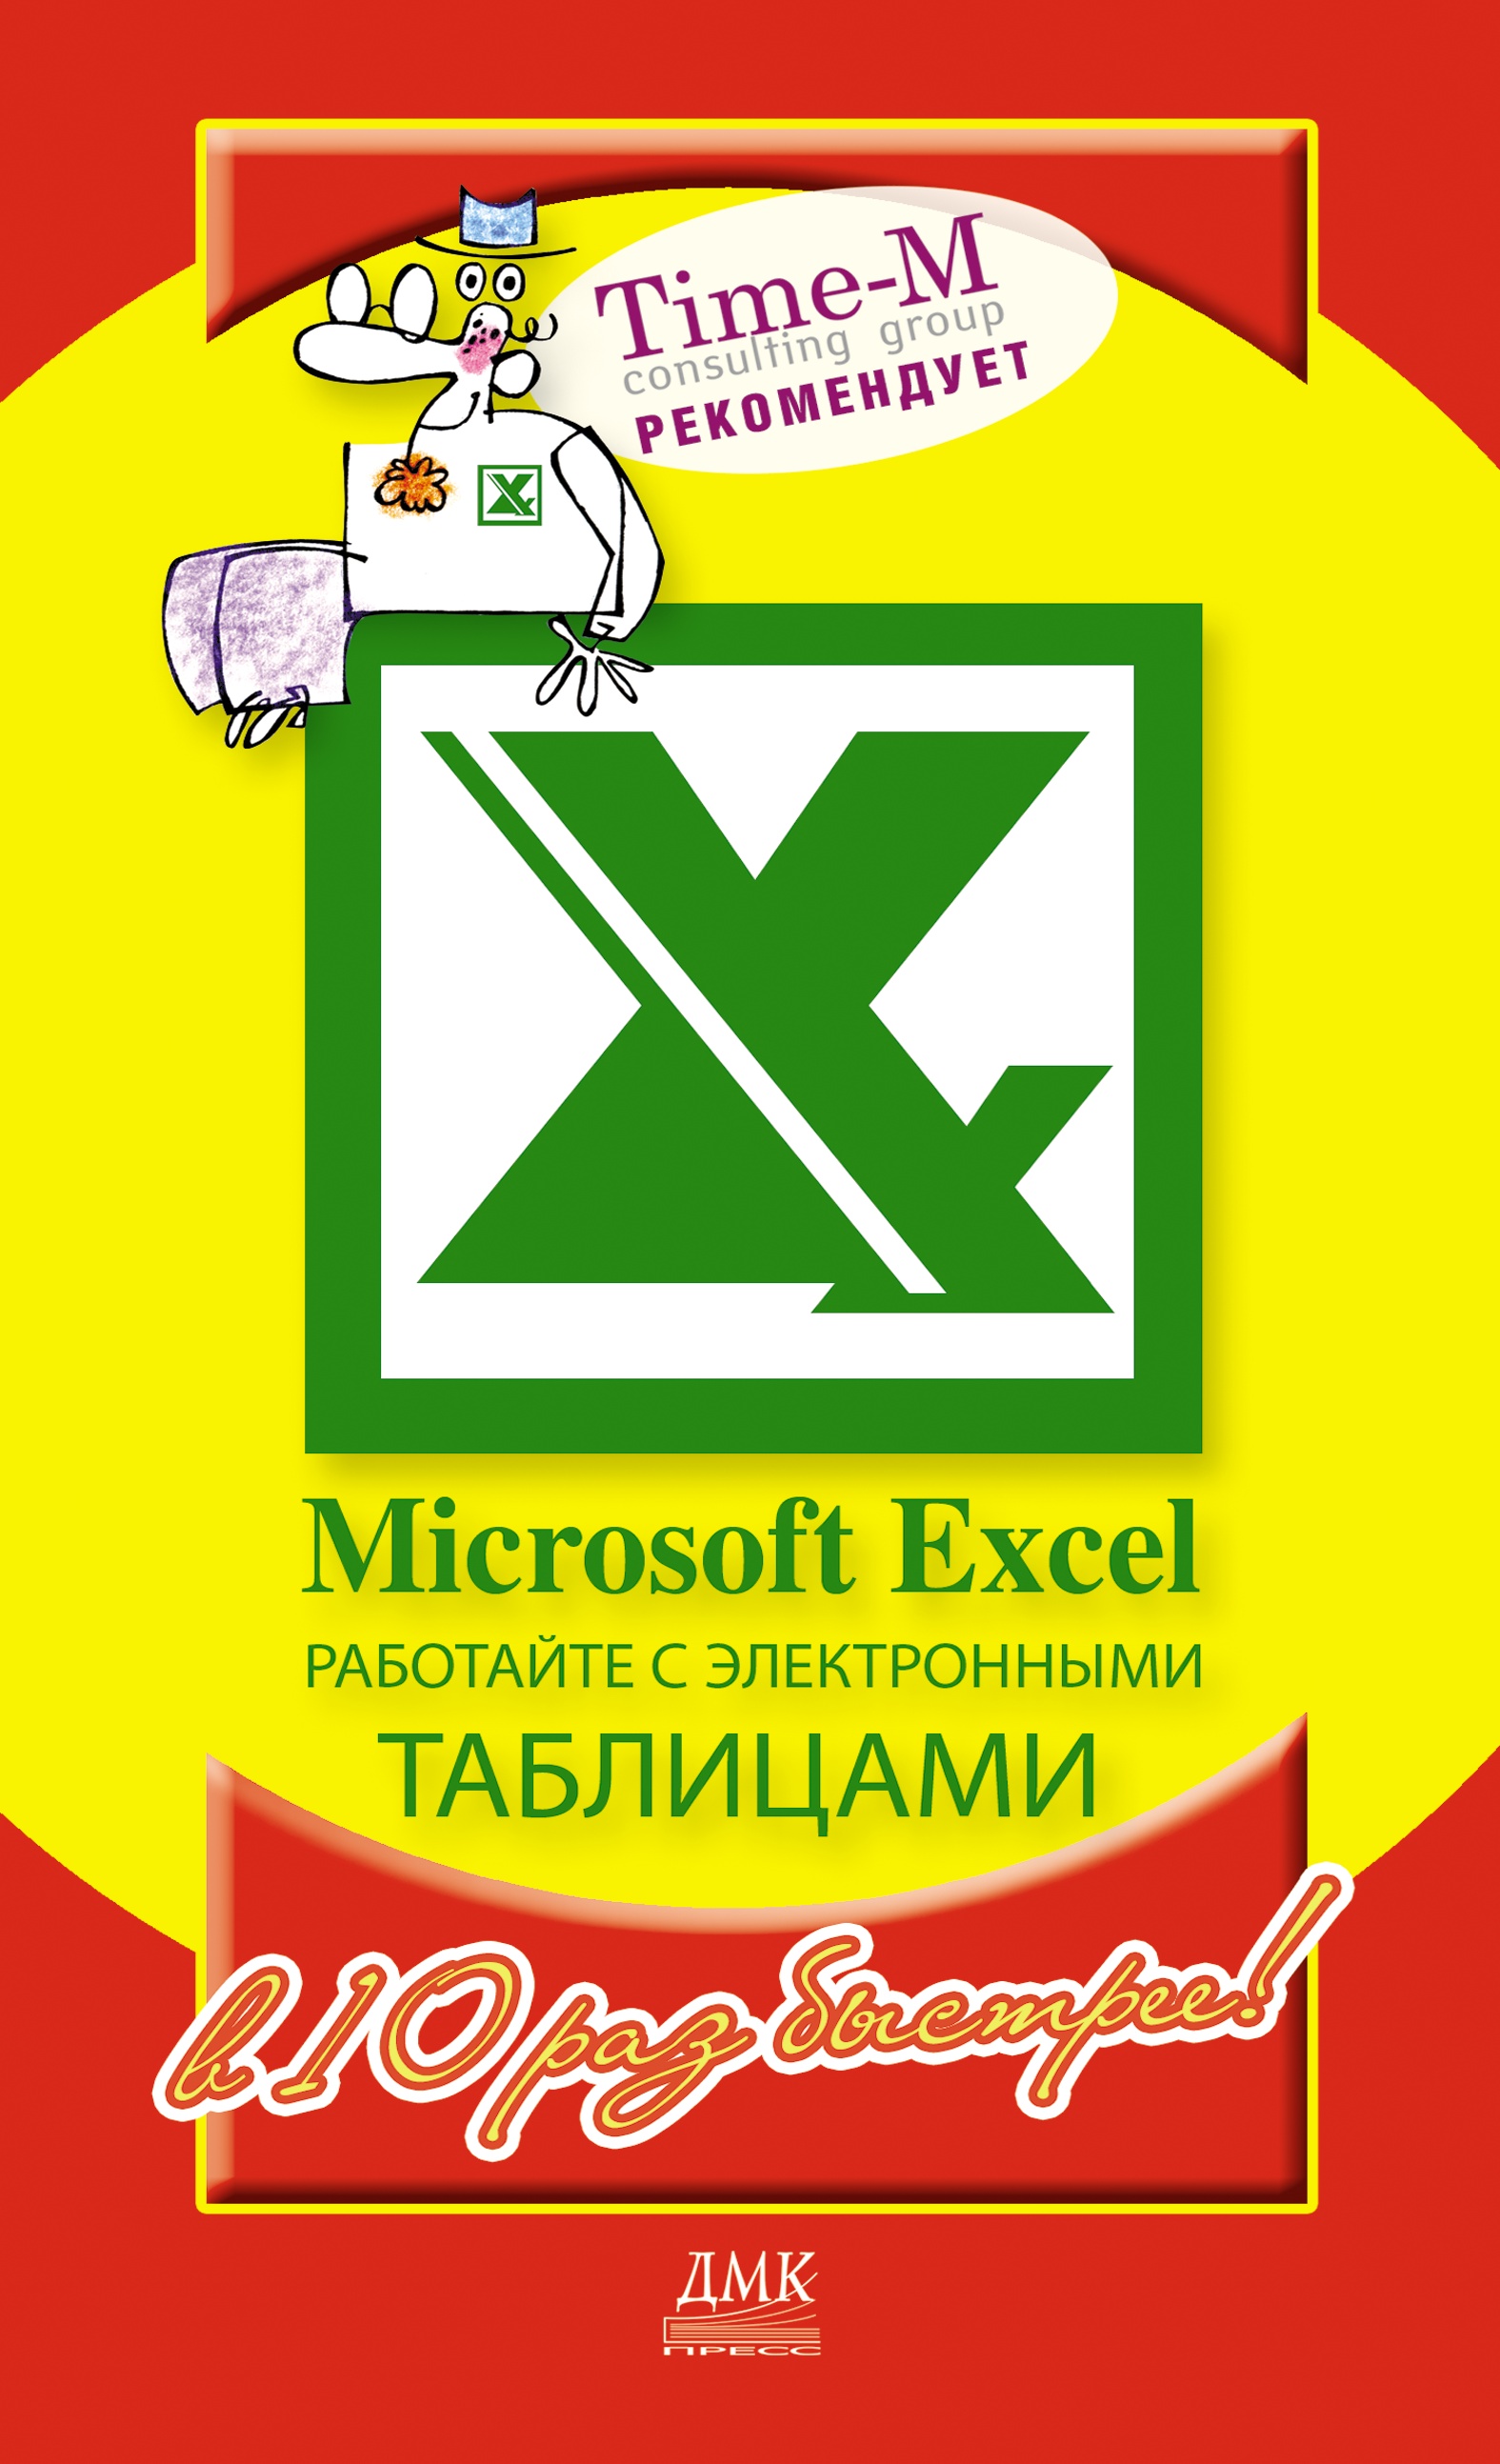 Книга  Microsoft Excel. Работайте с электронными таблицами в 10 раз быстрее созданная Александр Горбачев, Дмитрий Котлеев может относится к жанру программы. Стоимость электронной книги Microsoft Excel. Работайте с электронными таблицами в 10 раз быстрее с идентификатором 436095 составляет 79.00 руб.